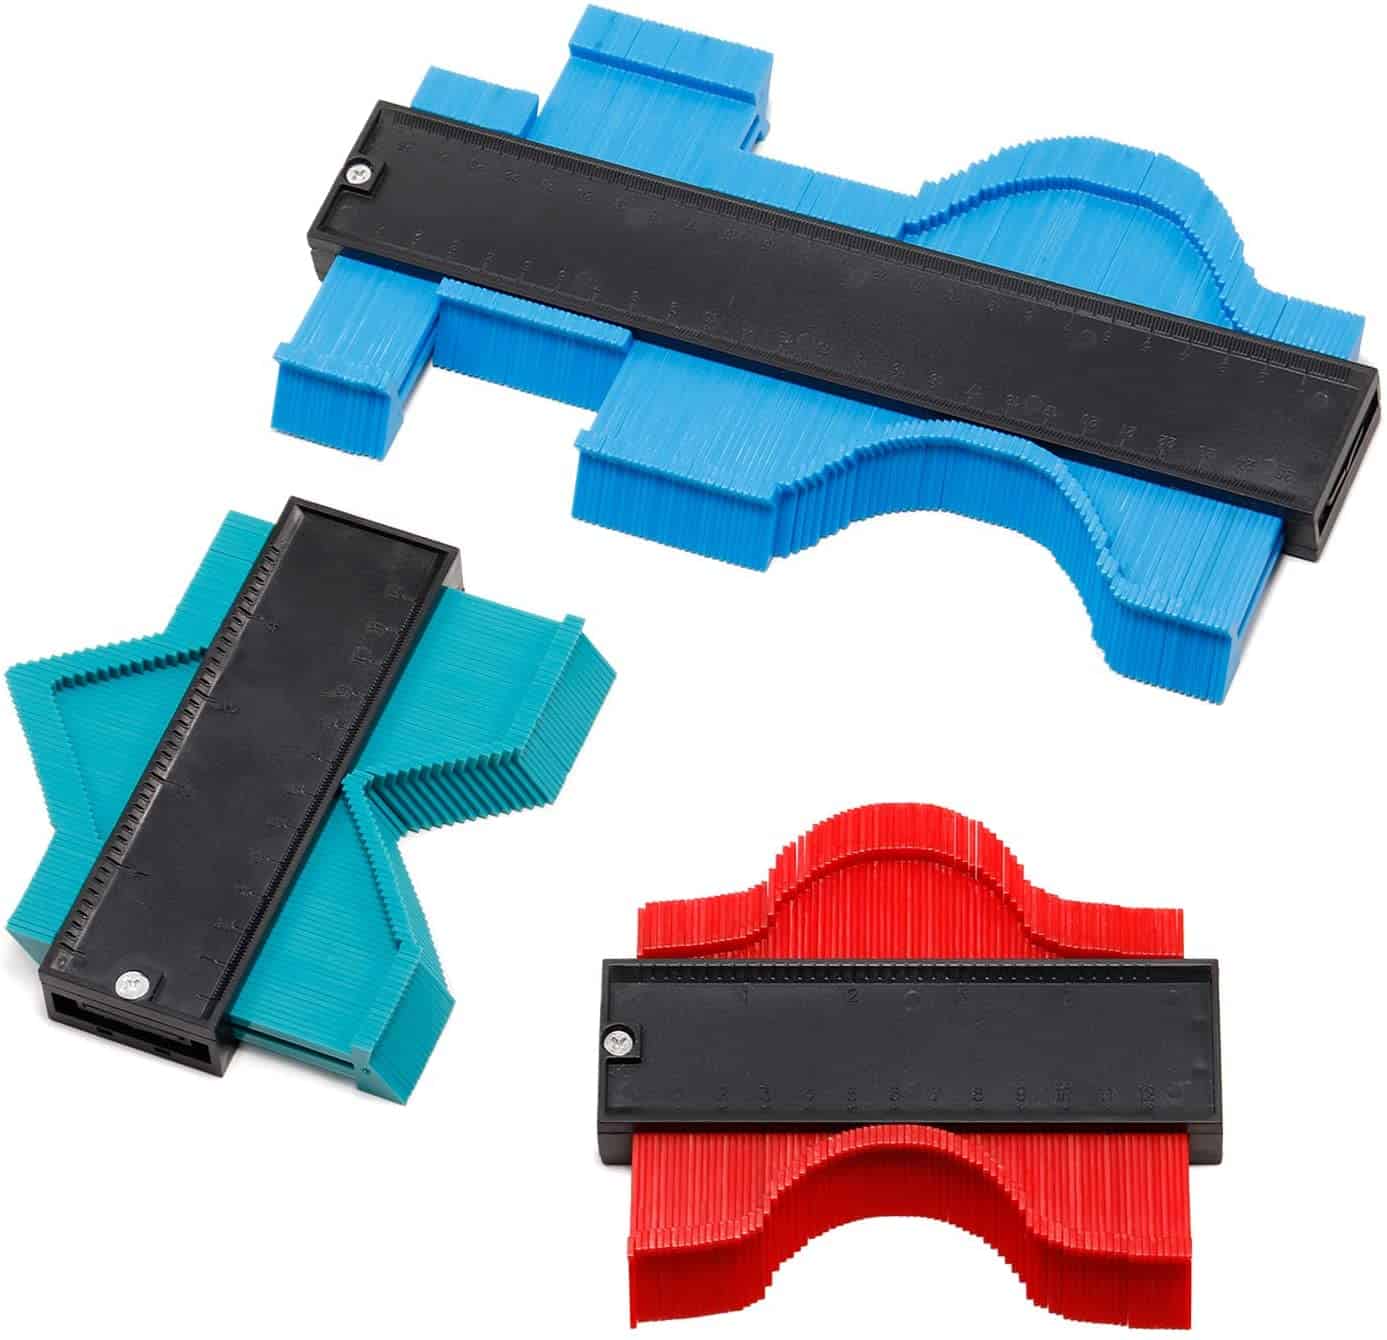 Best value for money contour gauge set- NadaKin Plastic Shape Duplicator Kit 3 Pieces